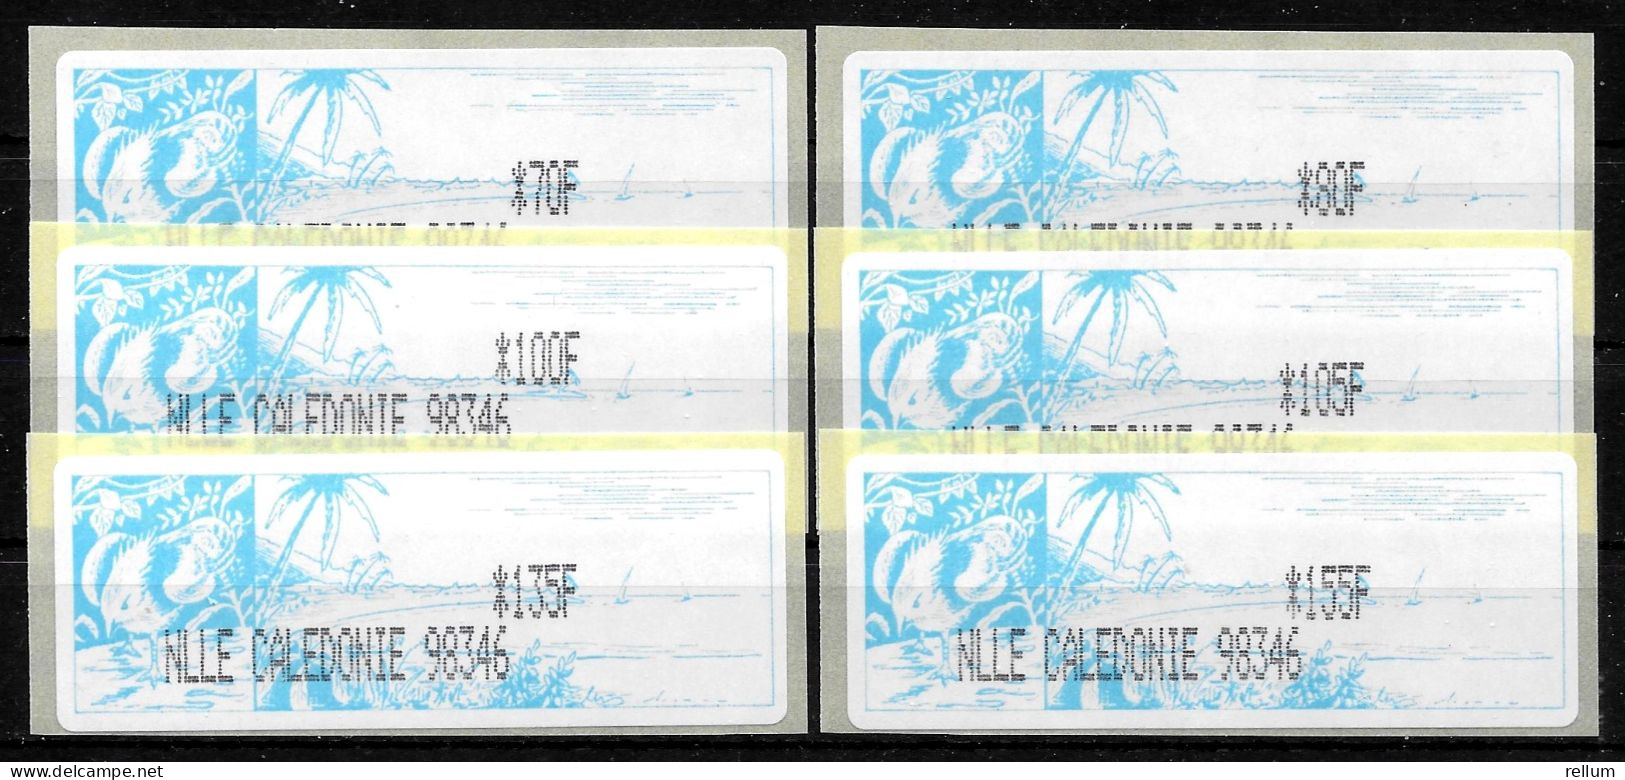 Nouvelle Calédonie 2003 Distributeur - Yvert Et Tellier Nr. 3 - Michel Nr. ATM 1f ** - Automatenmarken